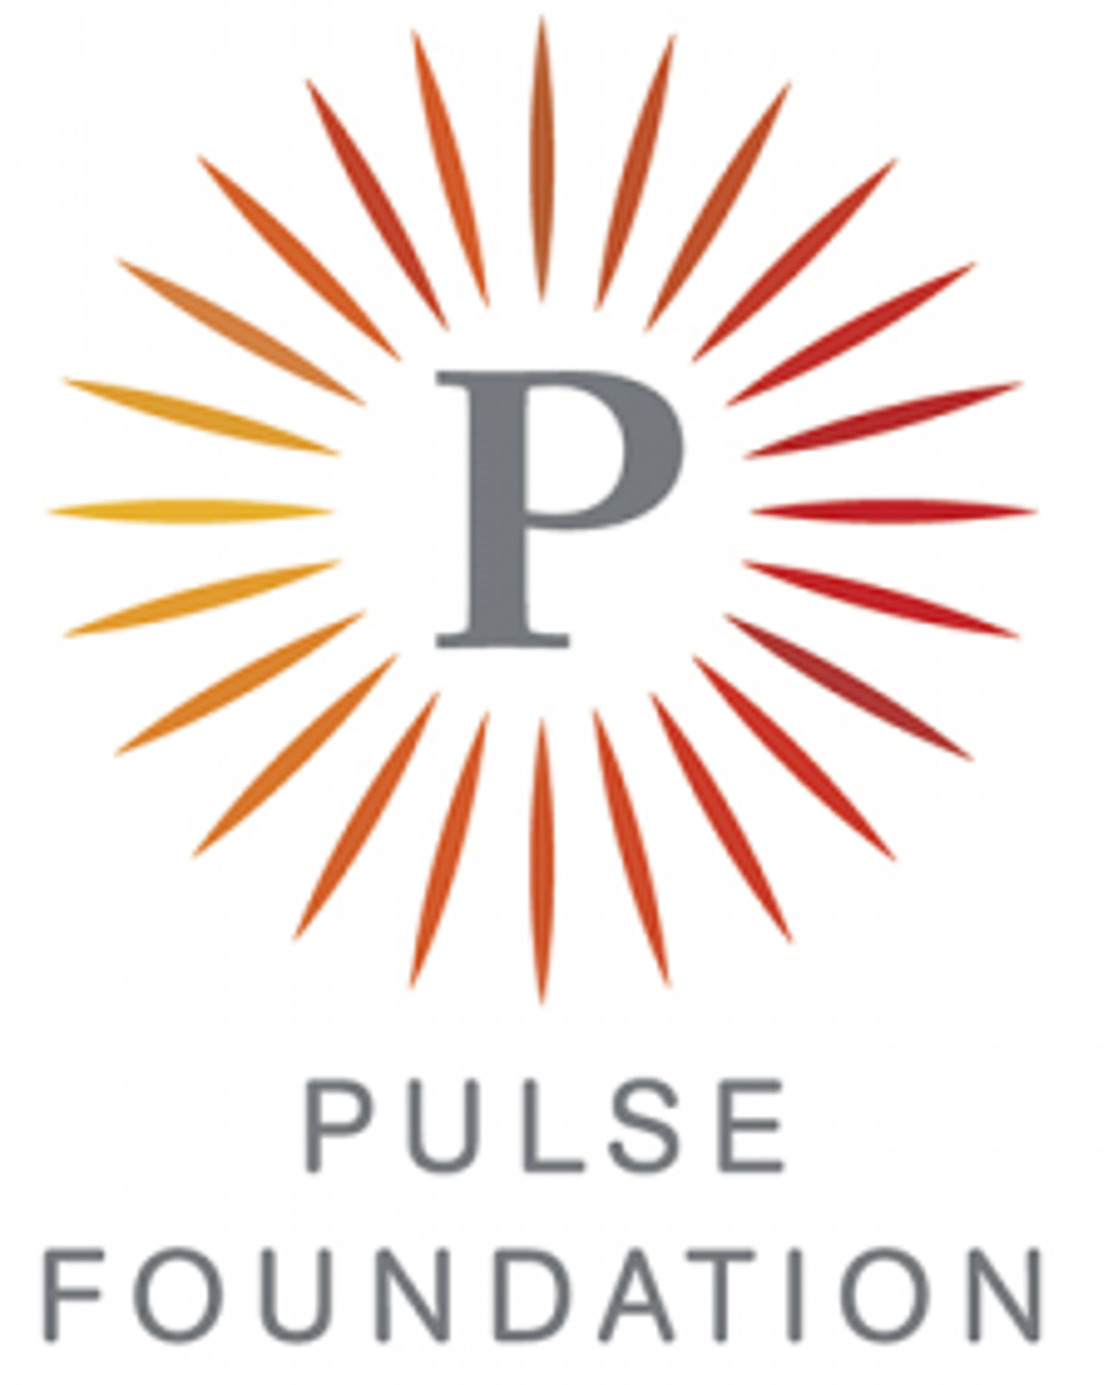 De Pulse Foundation en de Degroof Petercam Foundation bundelen hun krachten en lanceren een innovatief programma voor failliete ondernemers.